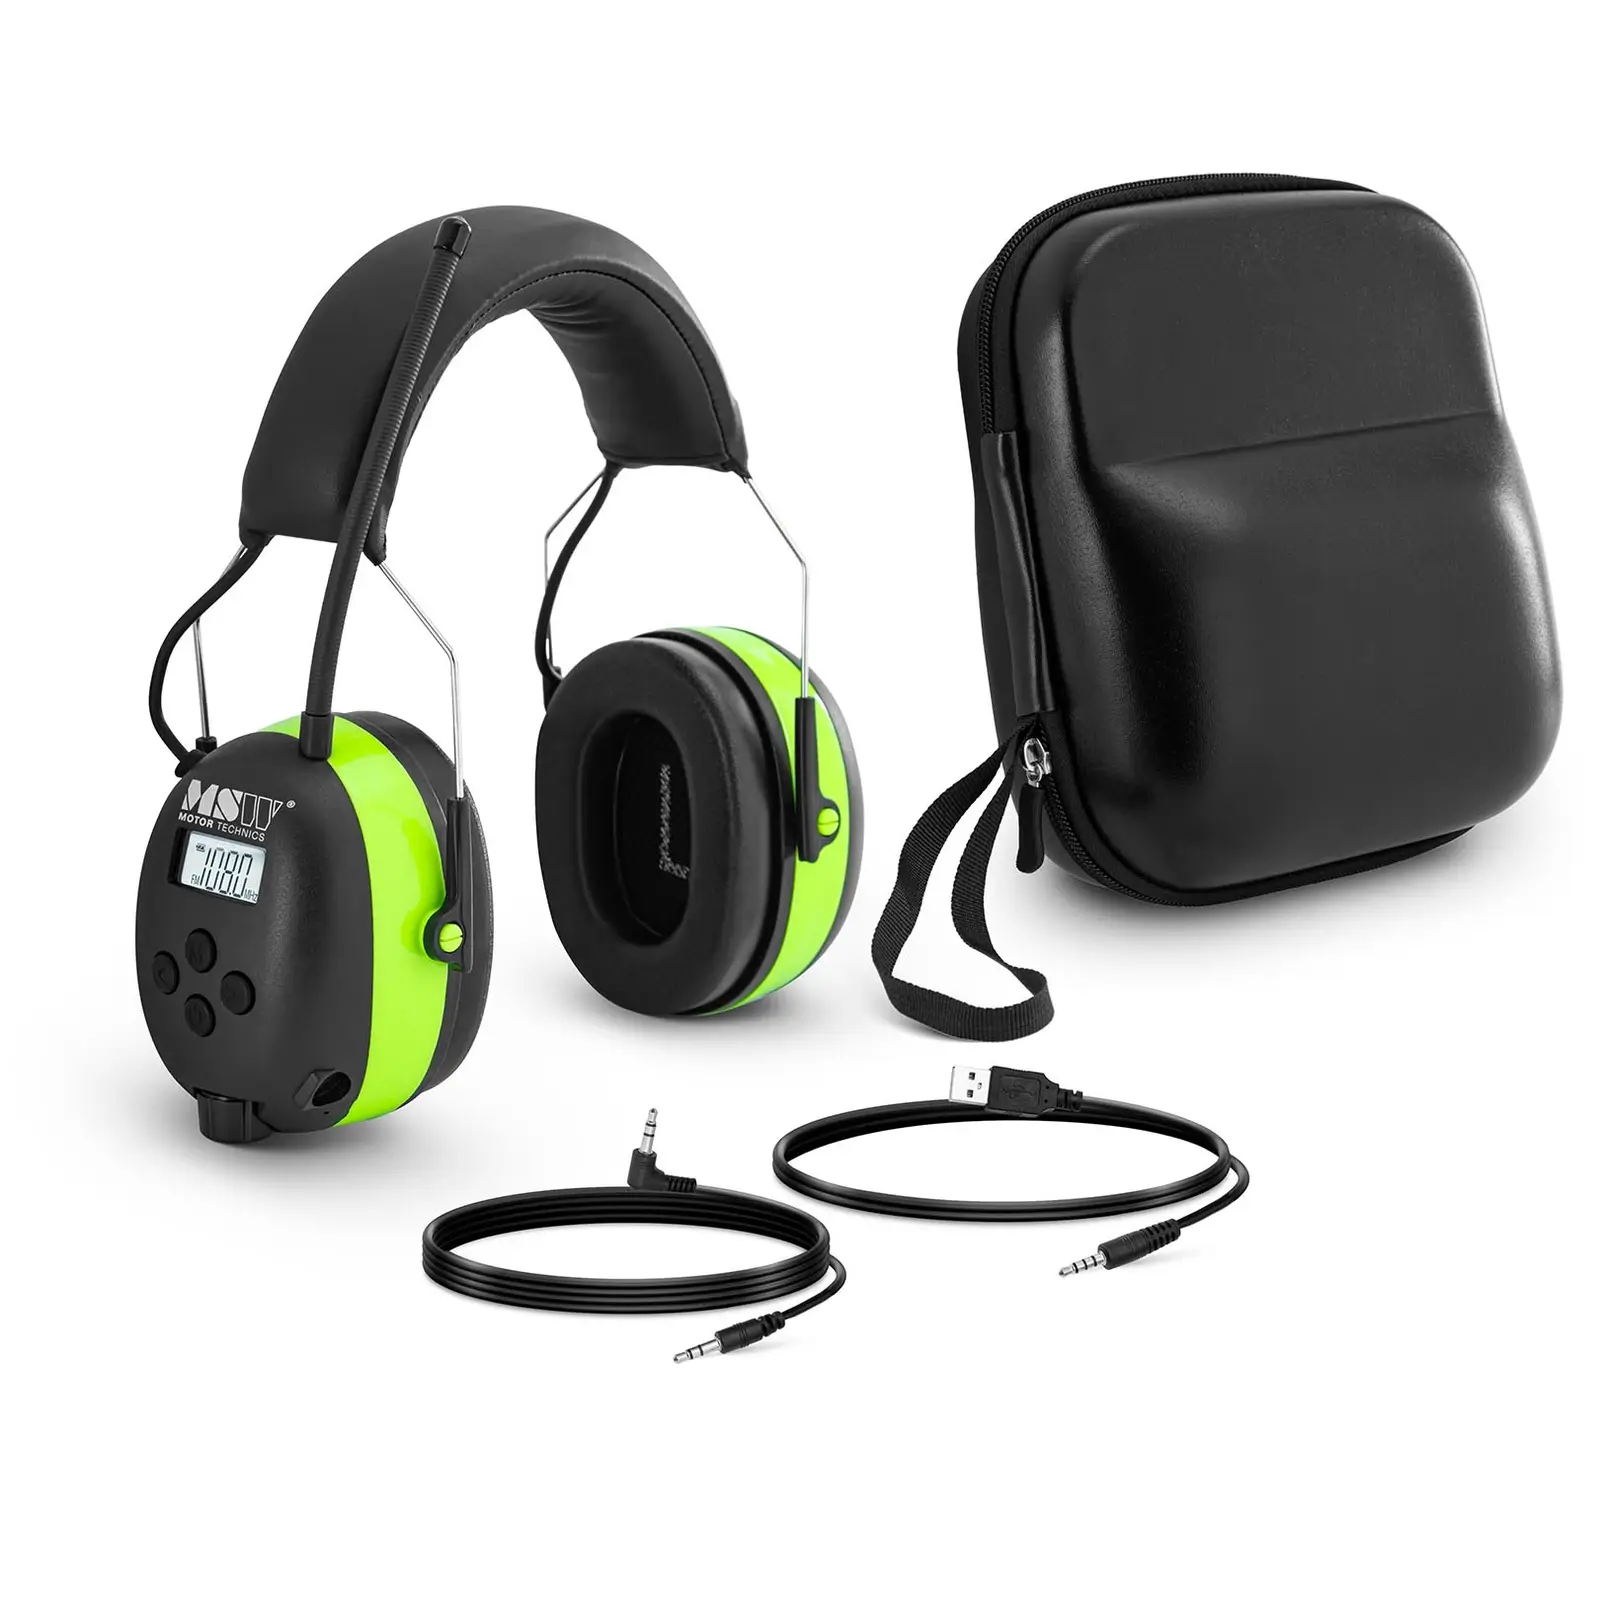 Bluetooth slušalice s poništavanjem buke - mikrofon - LCD zaslon - punjiva baterija - zelena